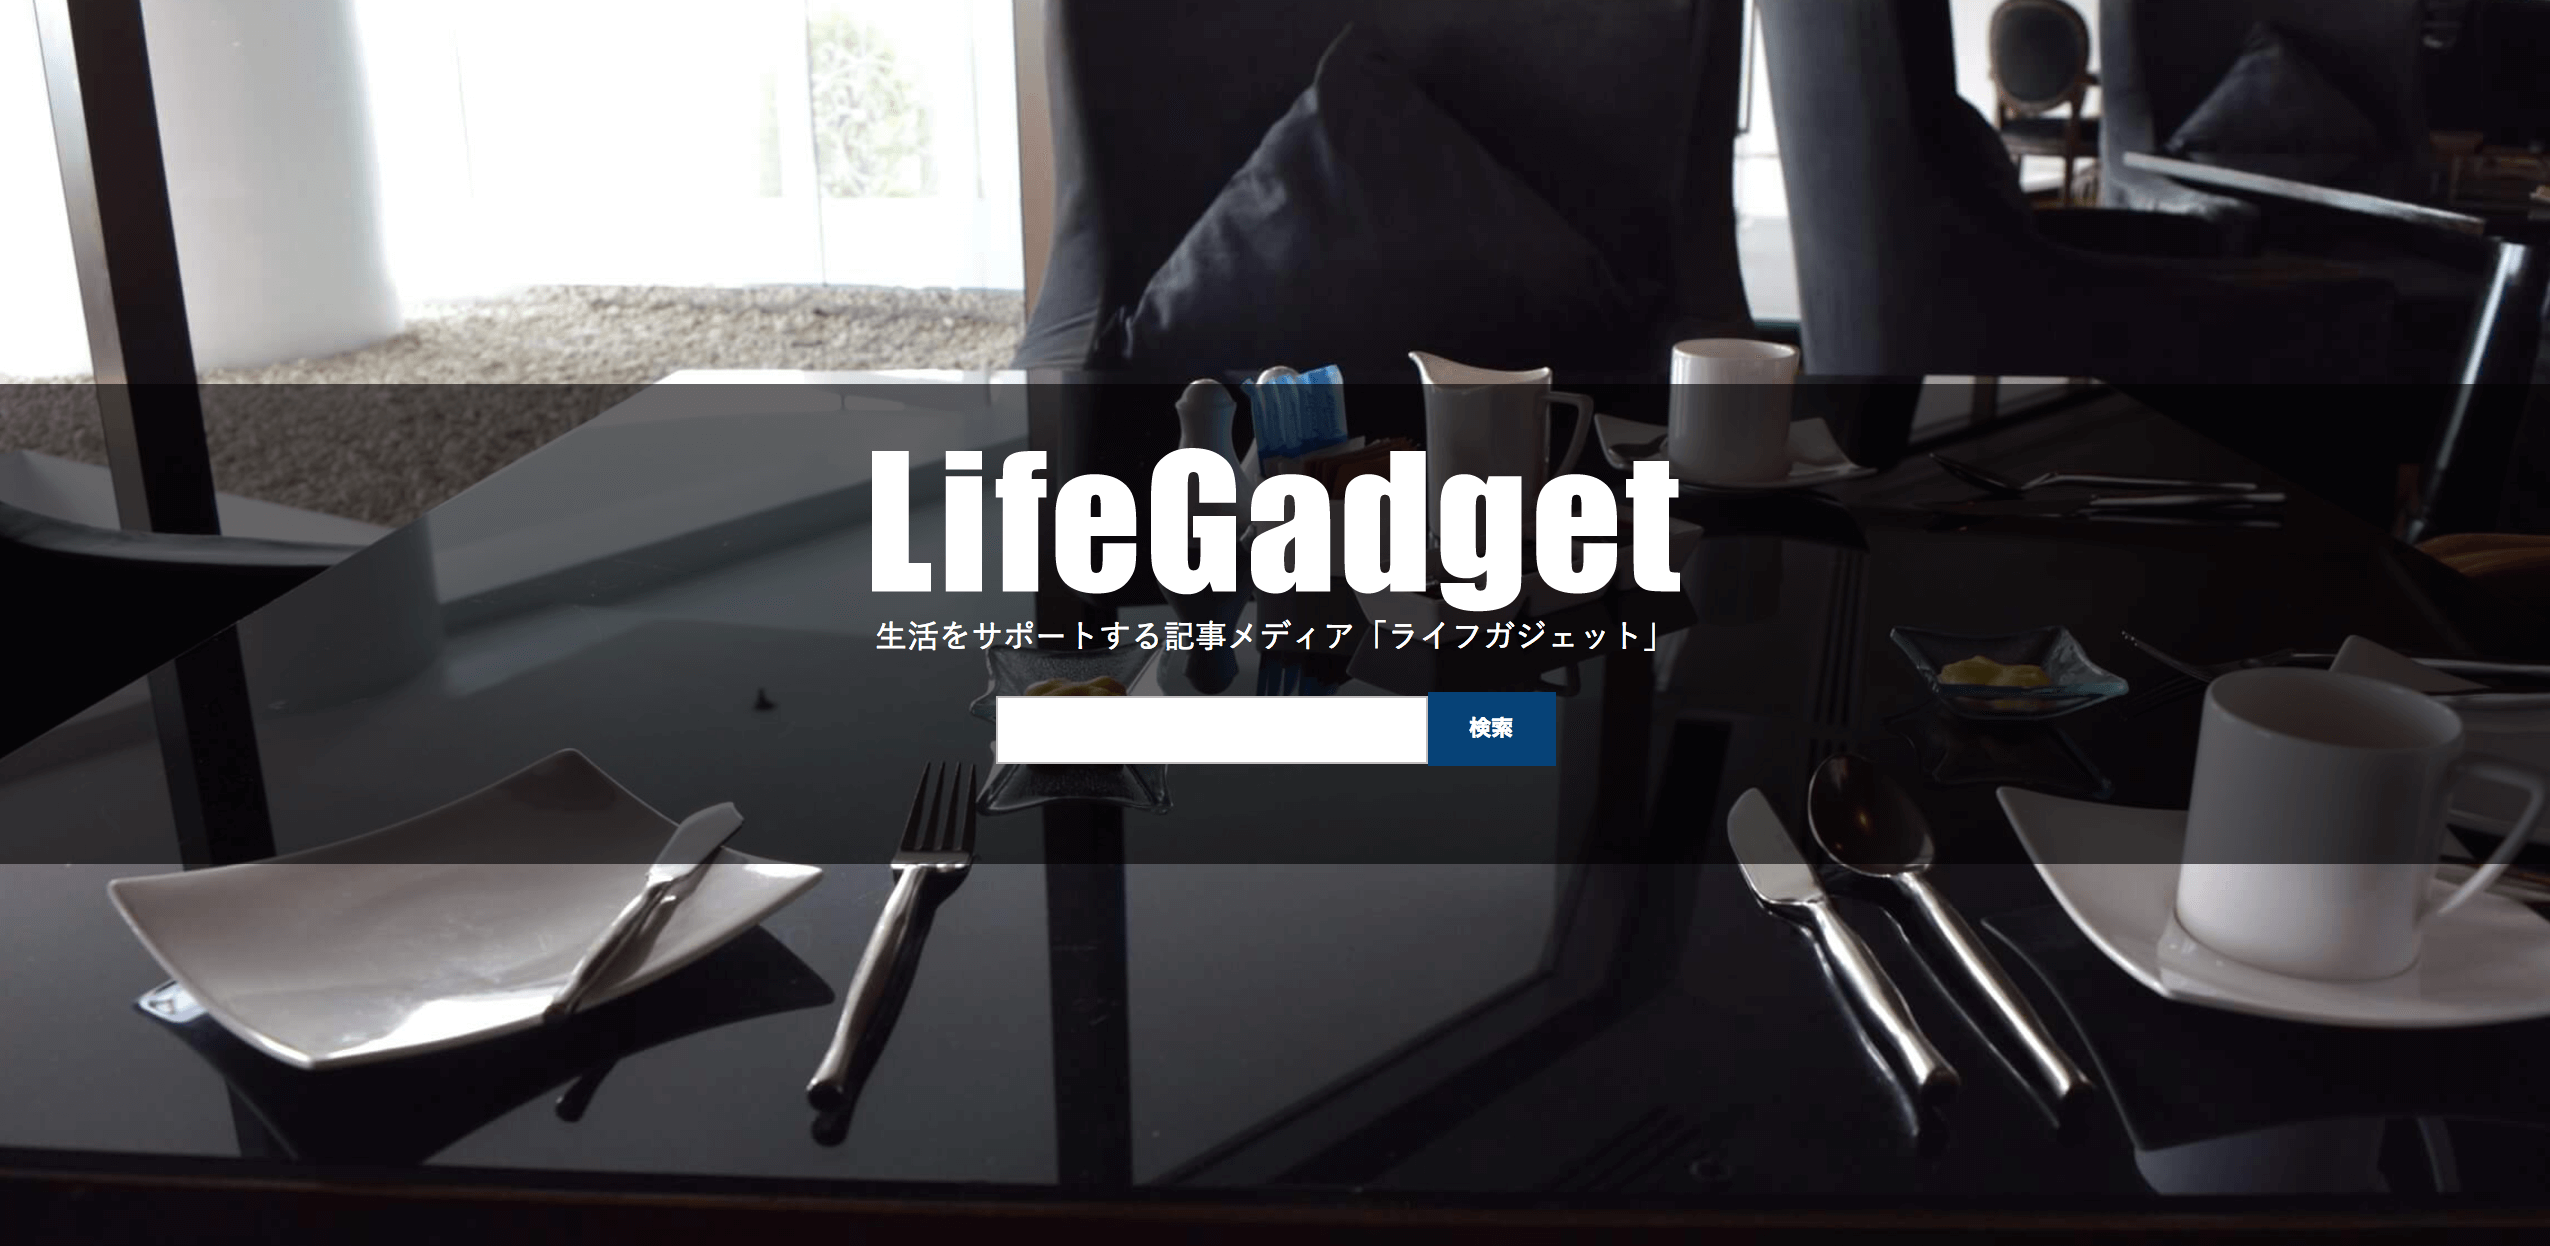 LifeGadget（ライフガジェット）